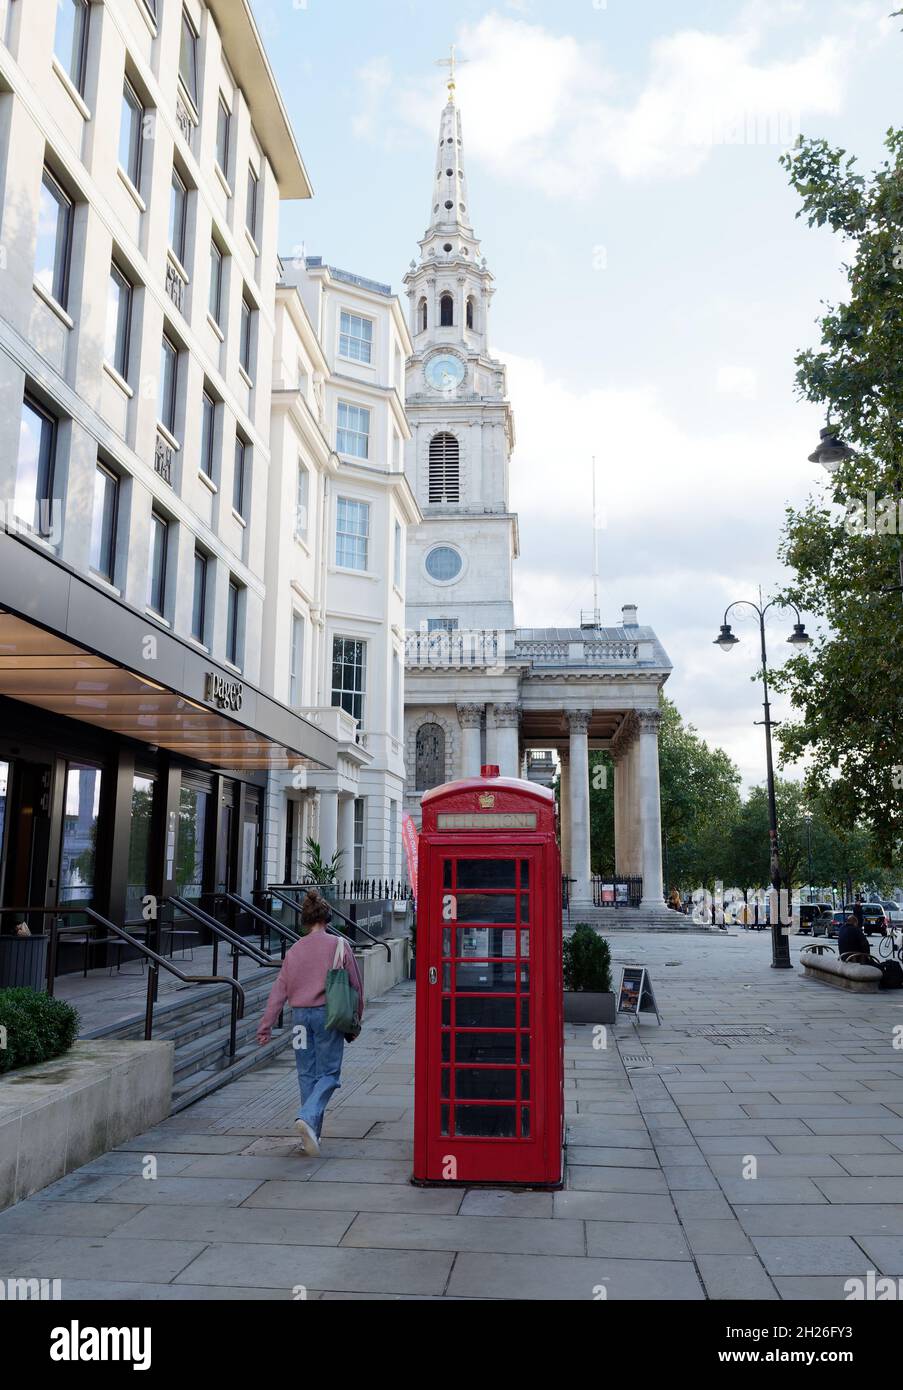 Londres, Gran Londres, Inglaterra, octubre de 05 2021: Teléfono rojo con San Martín en la iglesia de los campos detrás de Trafalgar Square. Foto de stock